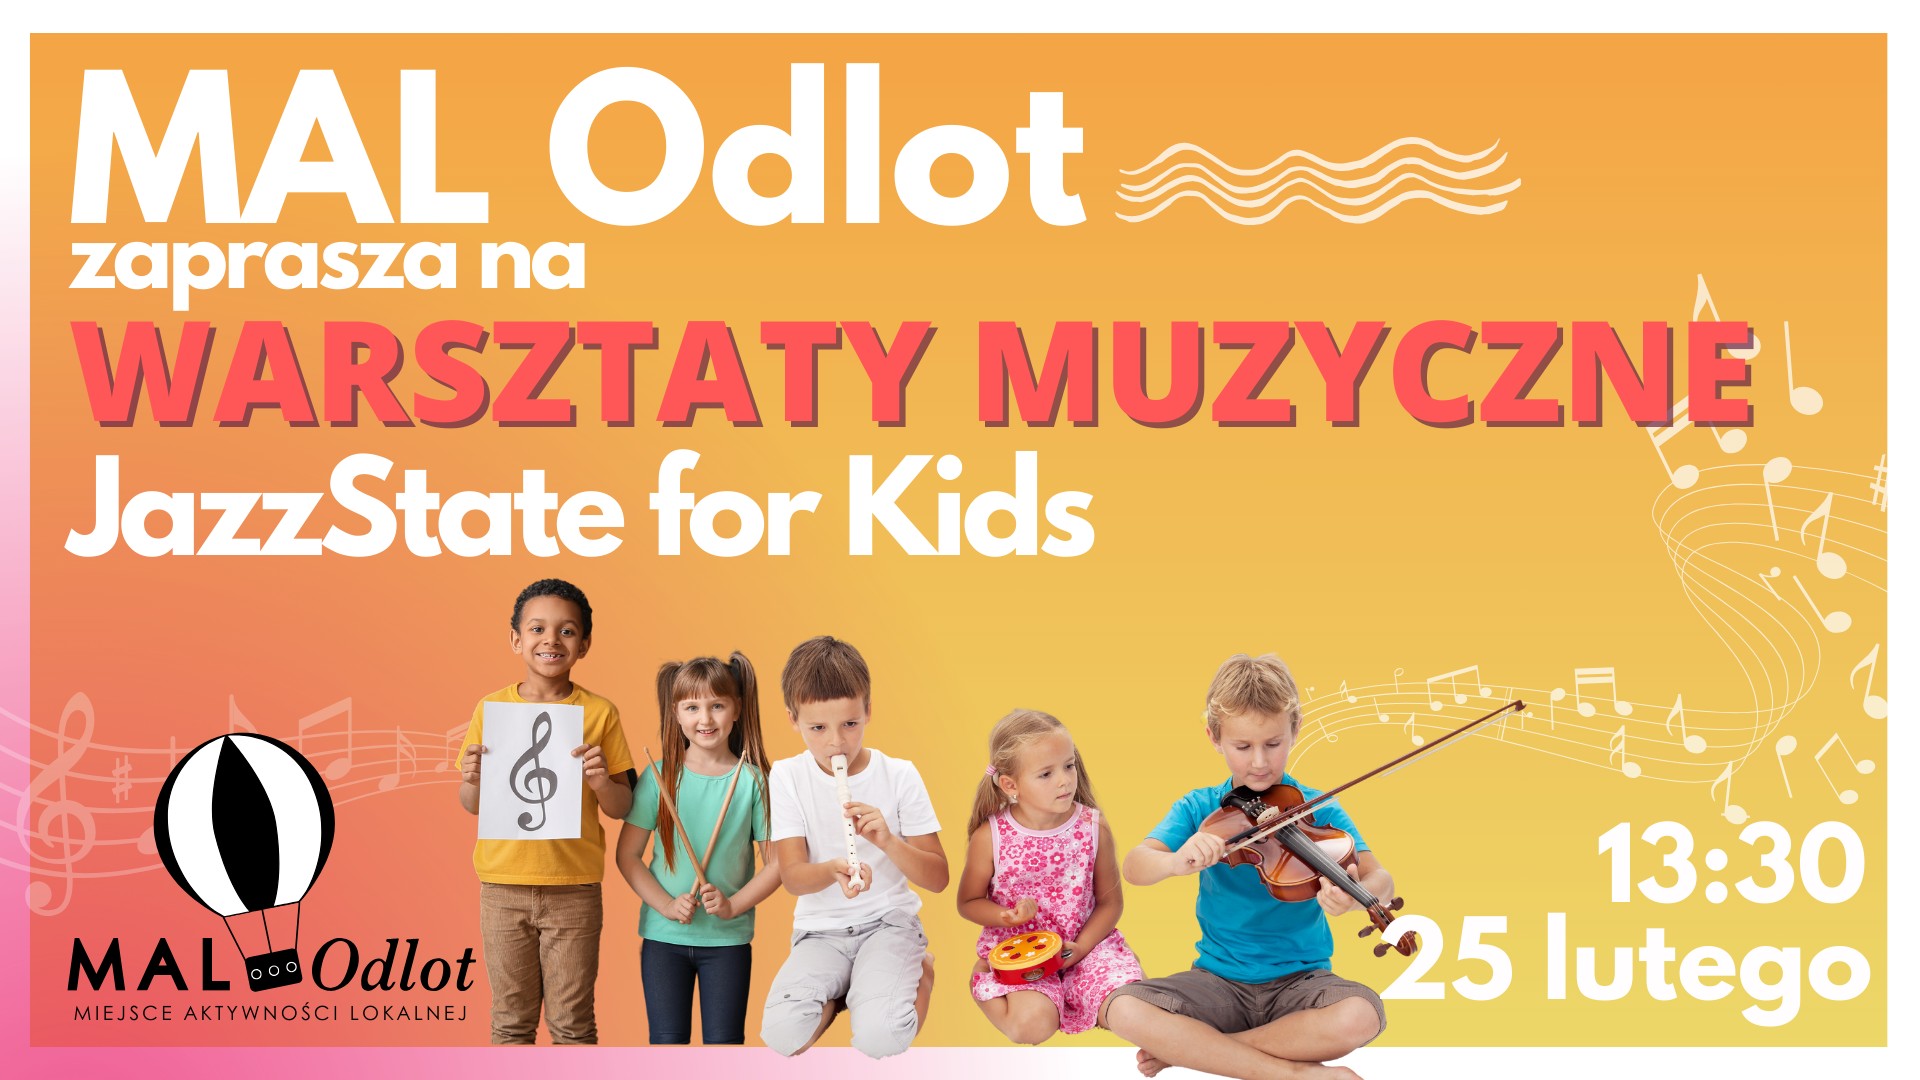 MAL Odlot - JazzState for Kids